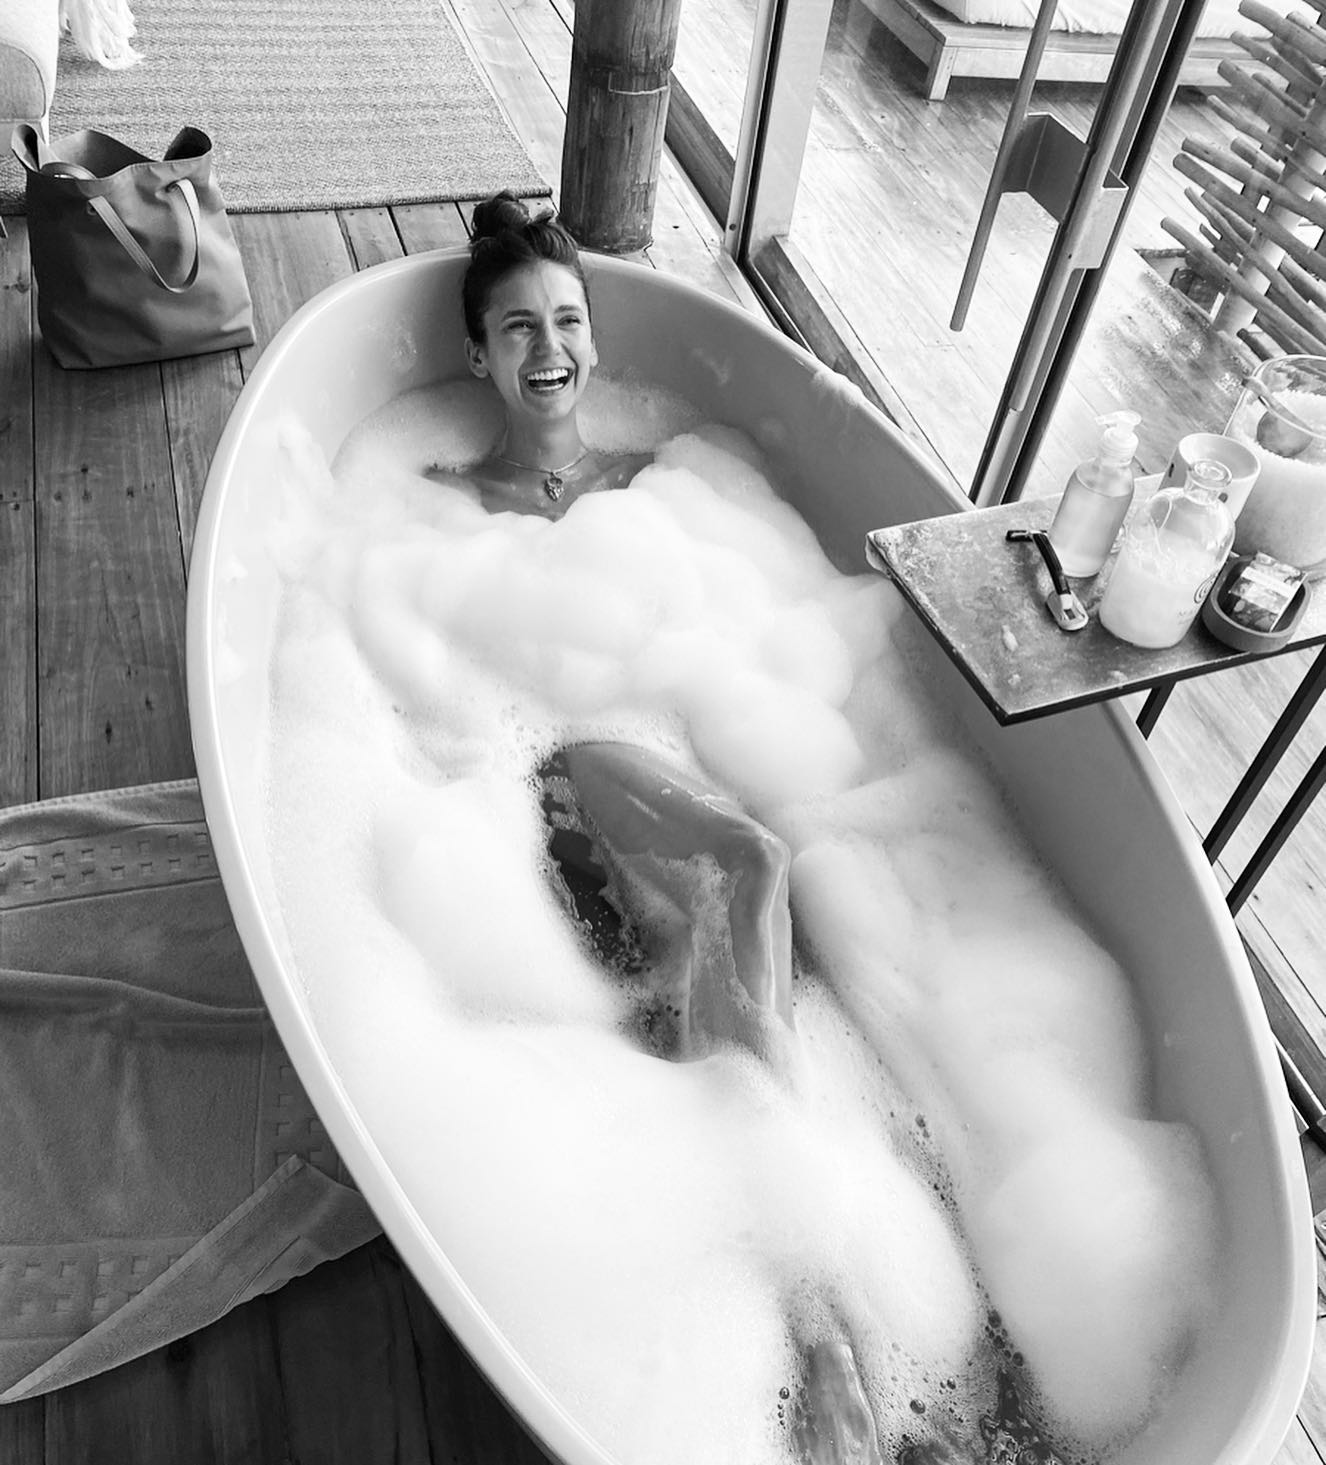 Photo n°1 : Nina Dobrev's Bath Time